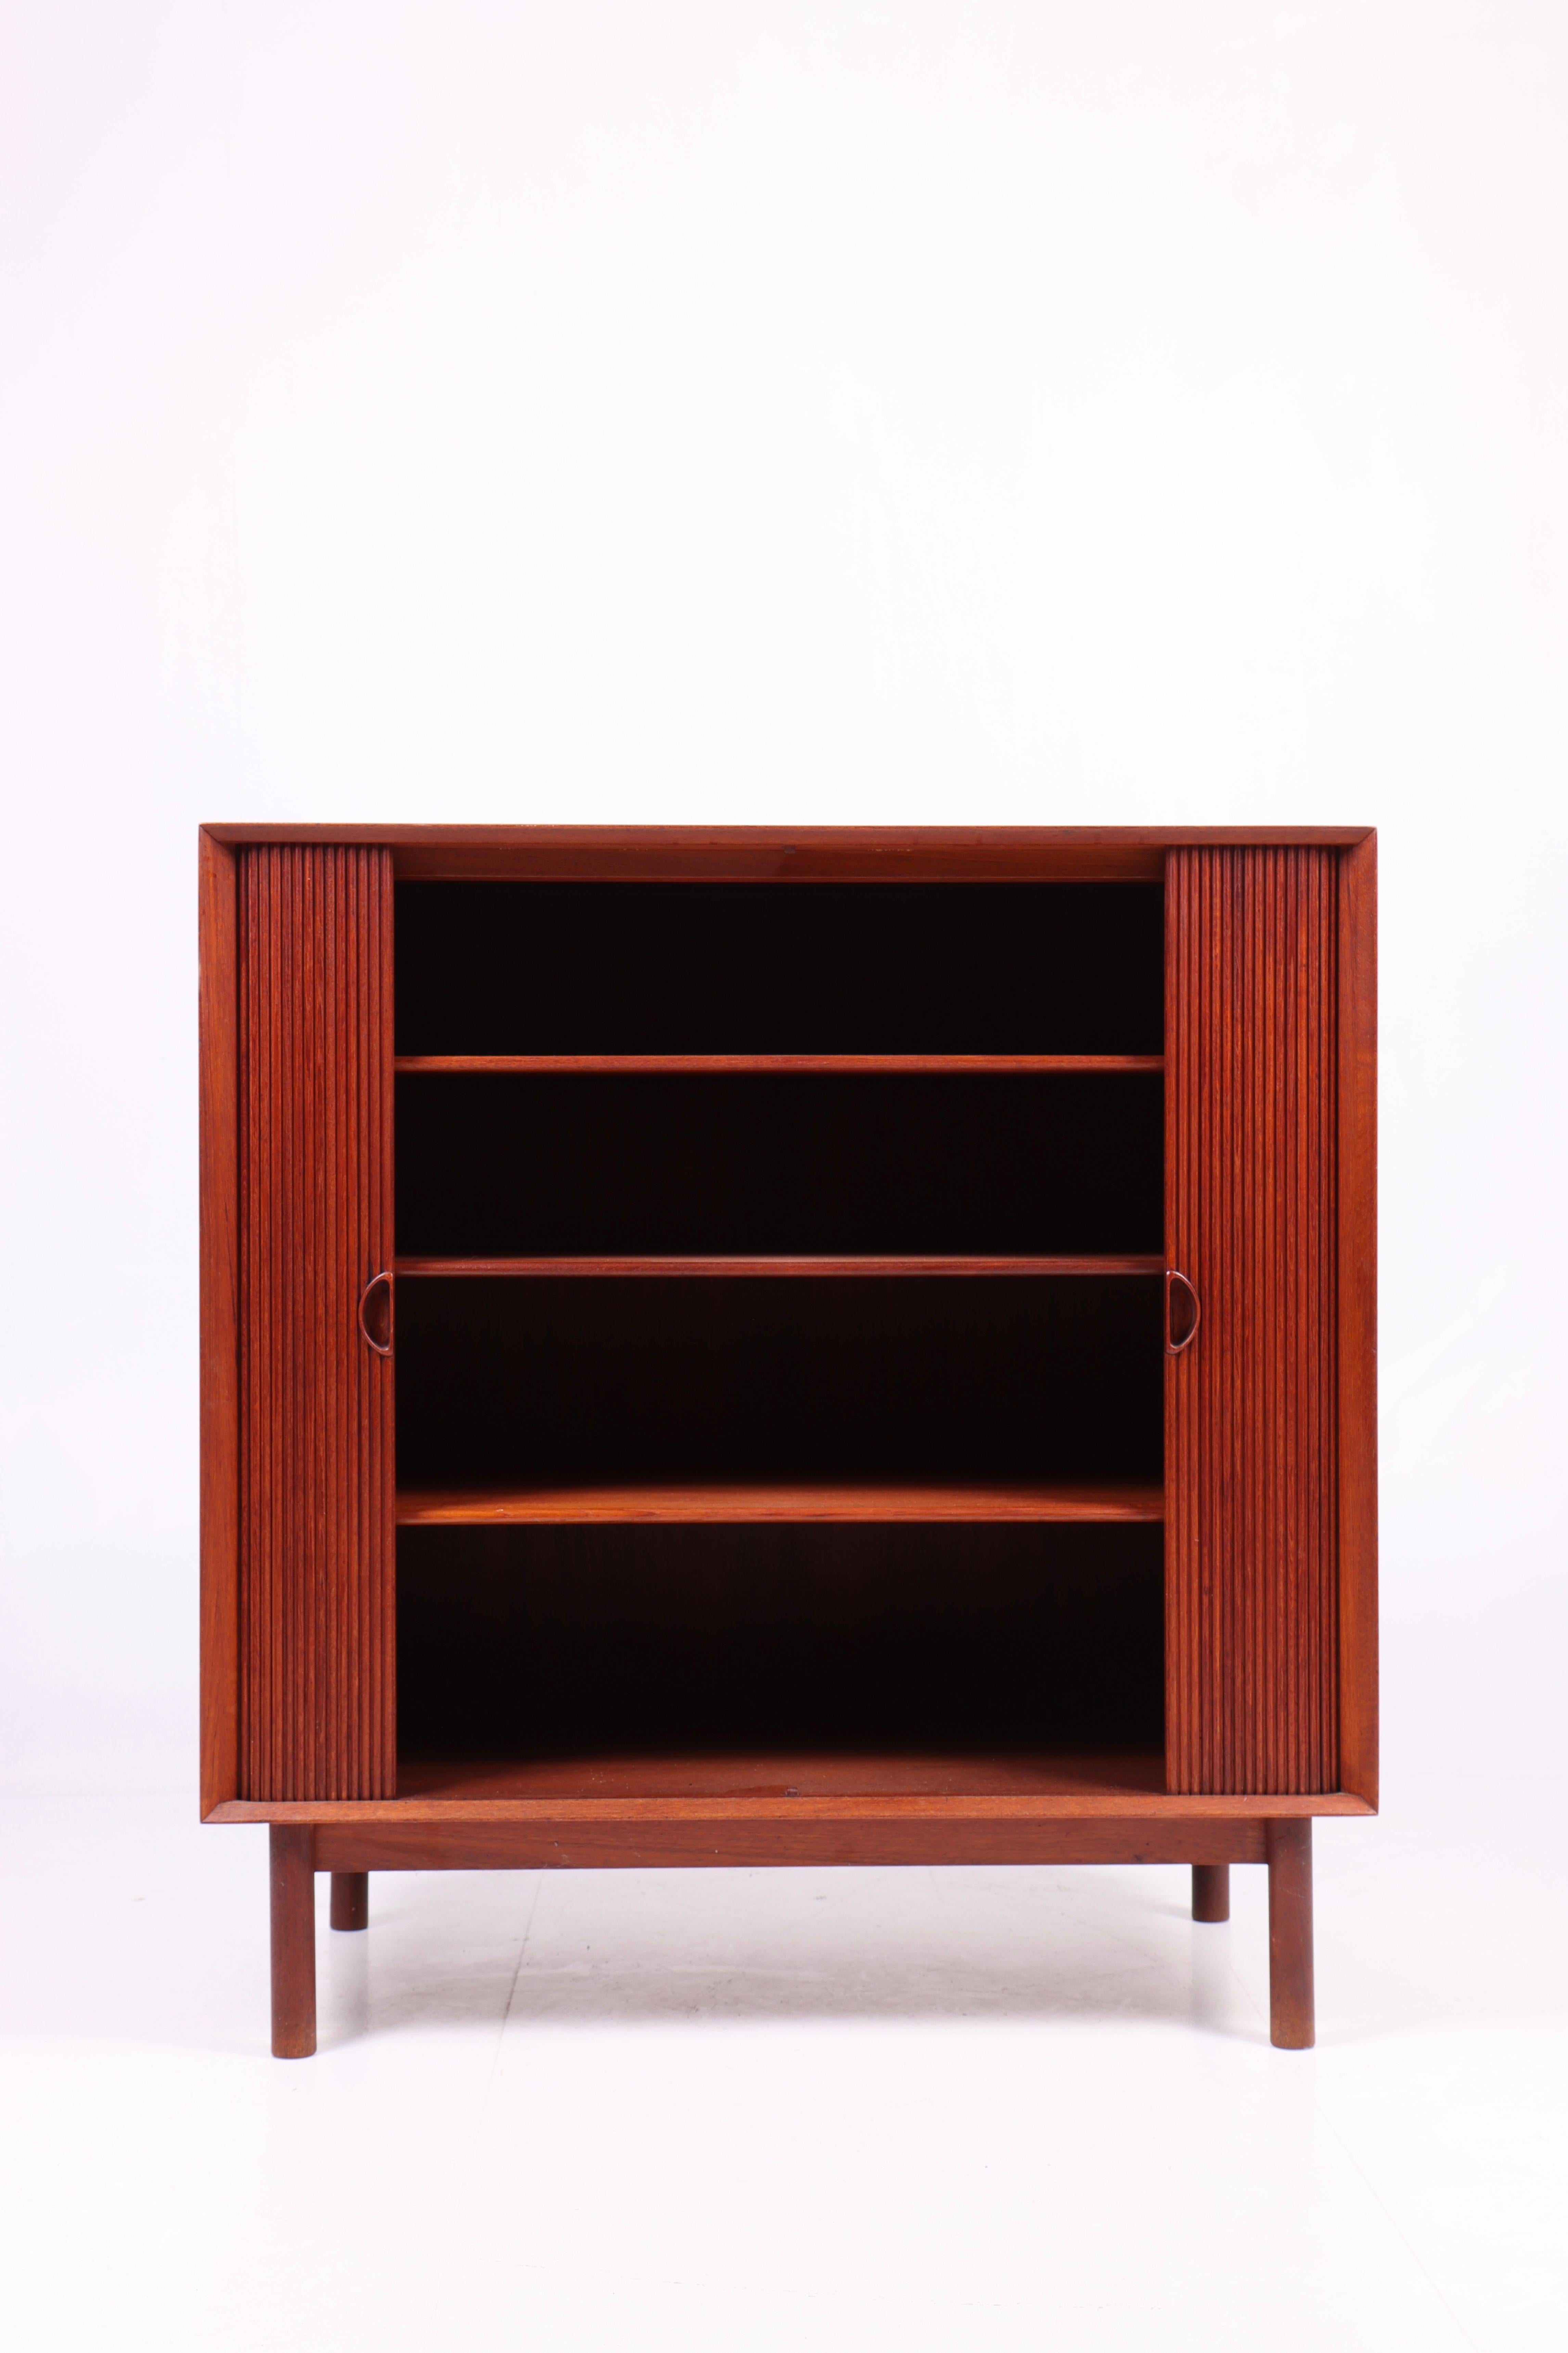 Scandinavian Modern Midcentury Cabinet in Solid Teak Designed by Hvidt & Mølgaard, 1950s For Sale